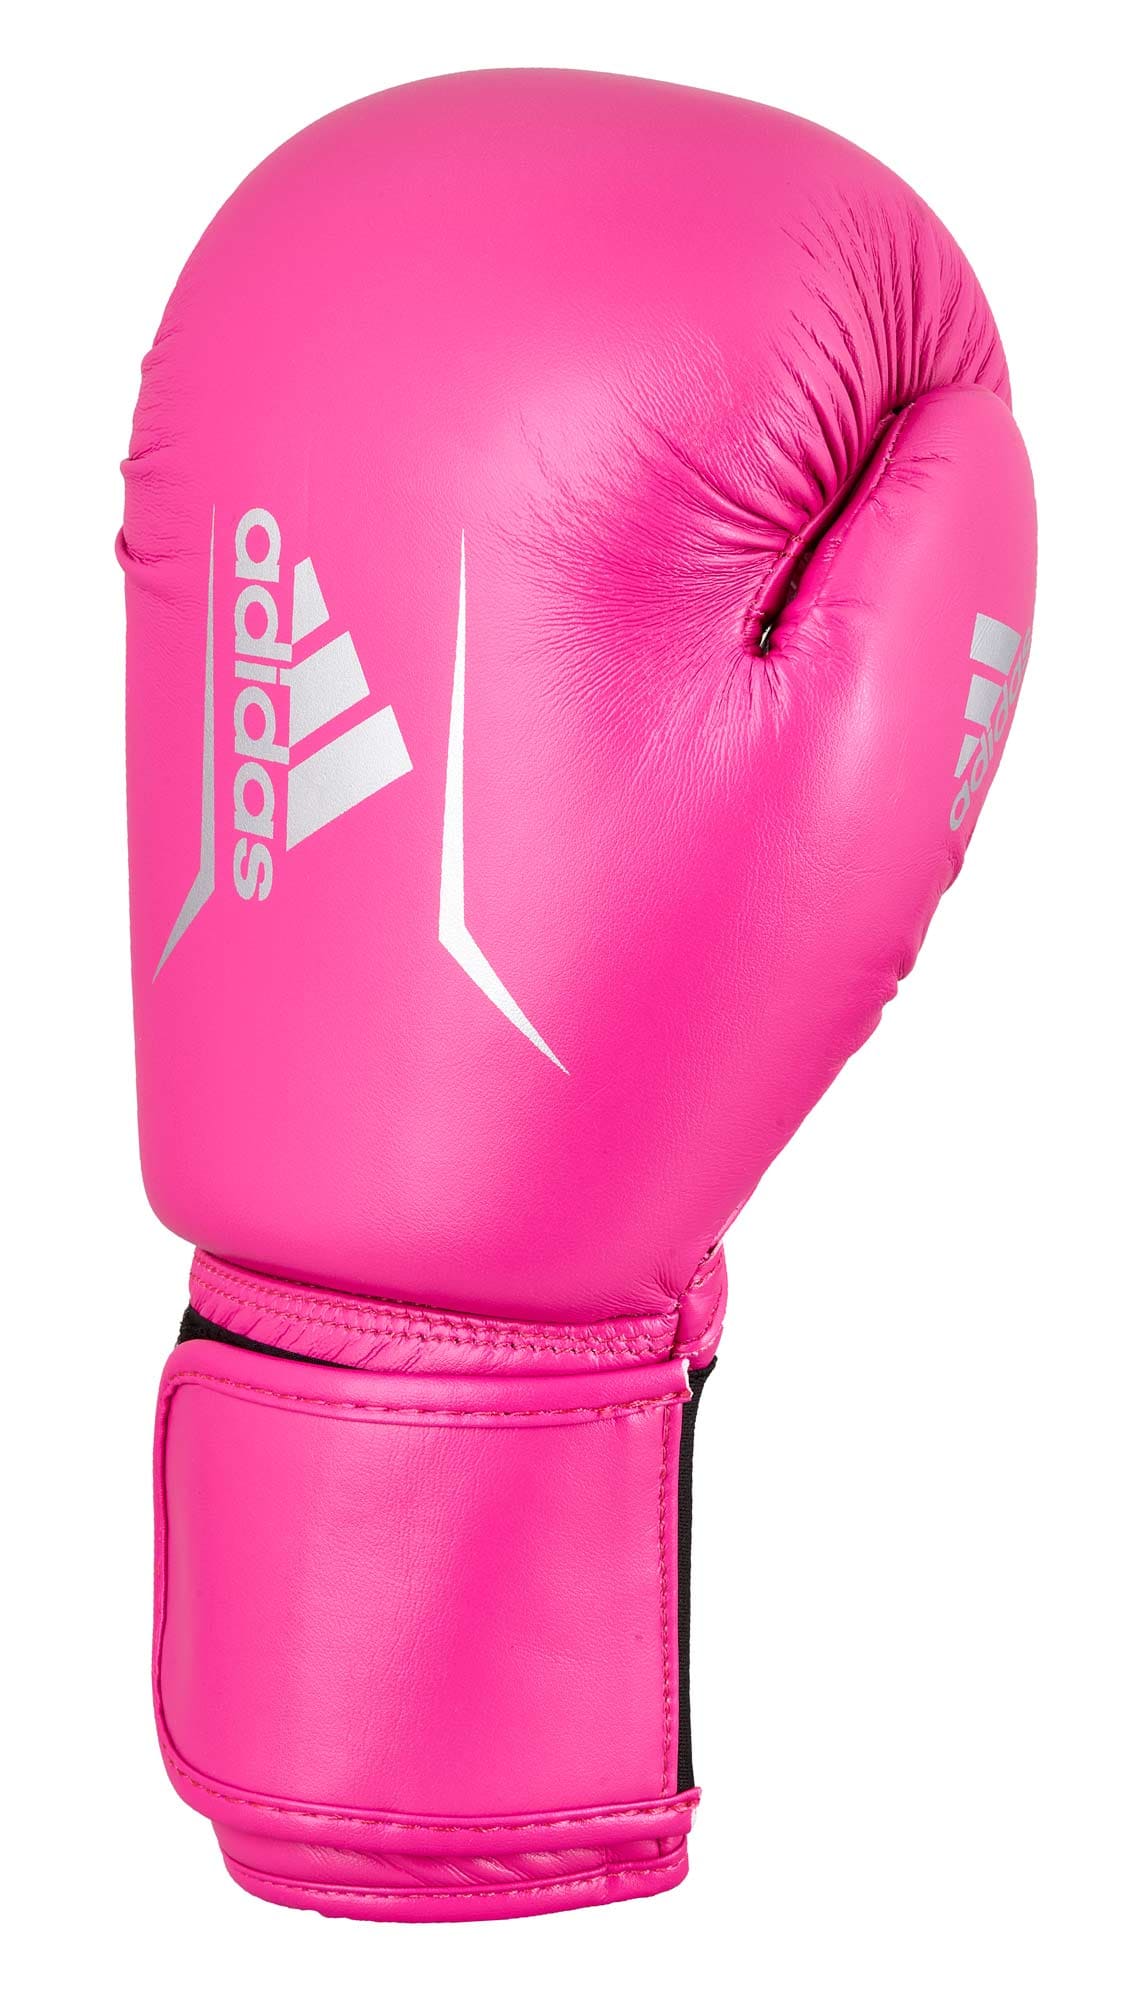 SPEED | 50 kaufen ✓ EMPAROR Pink Boxhandschuhe Adidas Online